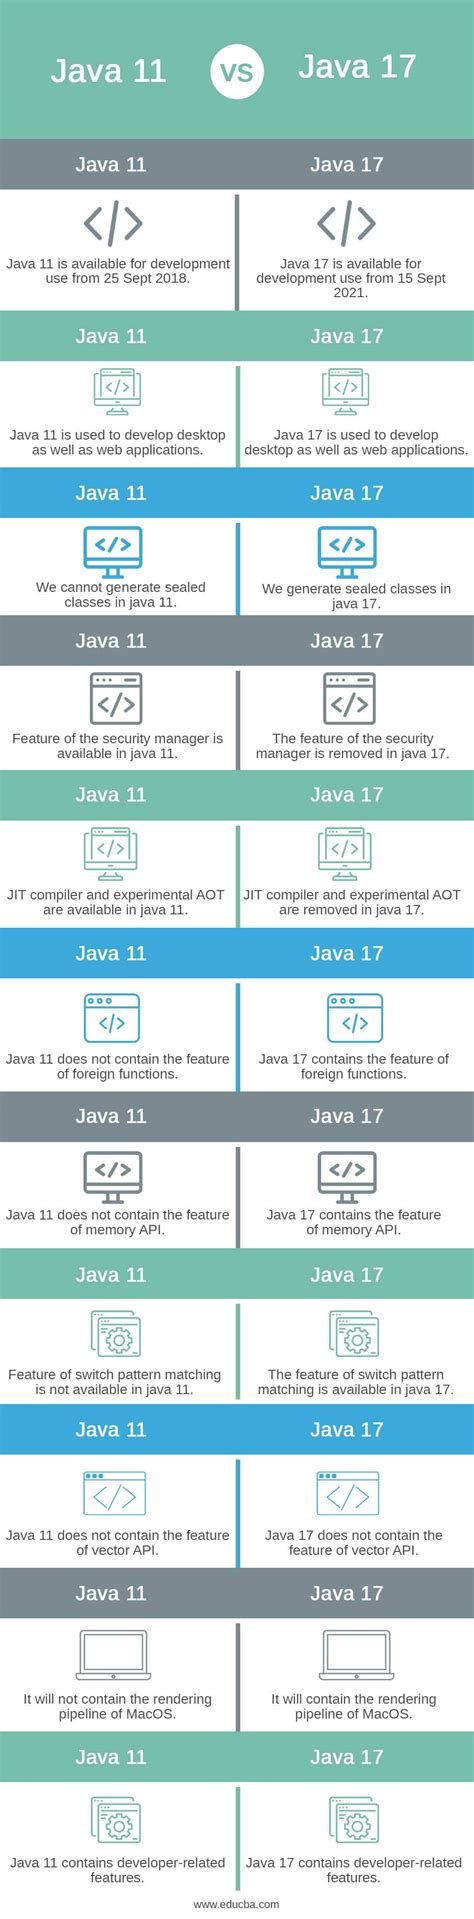 Is Java 17 safe?